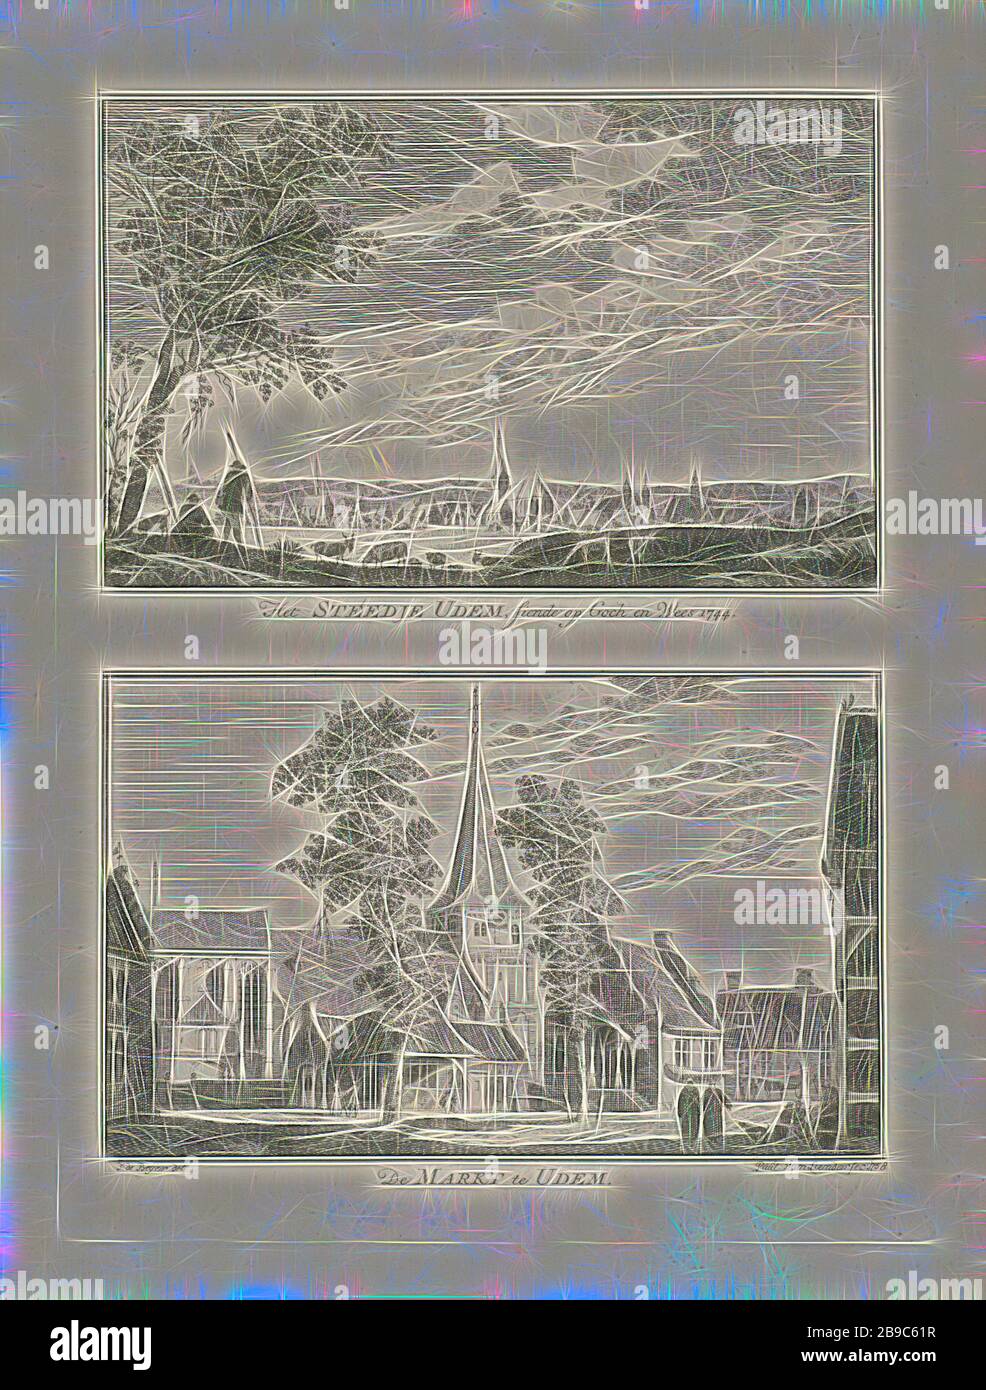 Cityscapes à Uedem, 1744 Het Steedje UdeM, servant sur goch et Wees 1744 / de Markt à UdeM (titre sur objet) Village et paysages urbains à Kleve (titre de la série), deux représentations d'une plaque. Deux vues sur la ville allemande d'Uedem. L'imprimé fait partie d'une série de 100 parties avec vue sur les villages et les villes de Kleve, vue sur la ville, Et paysage avec des constructions artificielles, rue, église (extérieure), Uedem, Paulus van Liender (mentionnée sur l'objet), 1758, papier, gravure, h 204 mm × W 149 mm, réinventé par Gibon, design de gaie chaleureuse de luminosité et de rayonnement de rayons de lumière. Art classique réinvente Banque D'Images